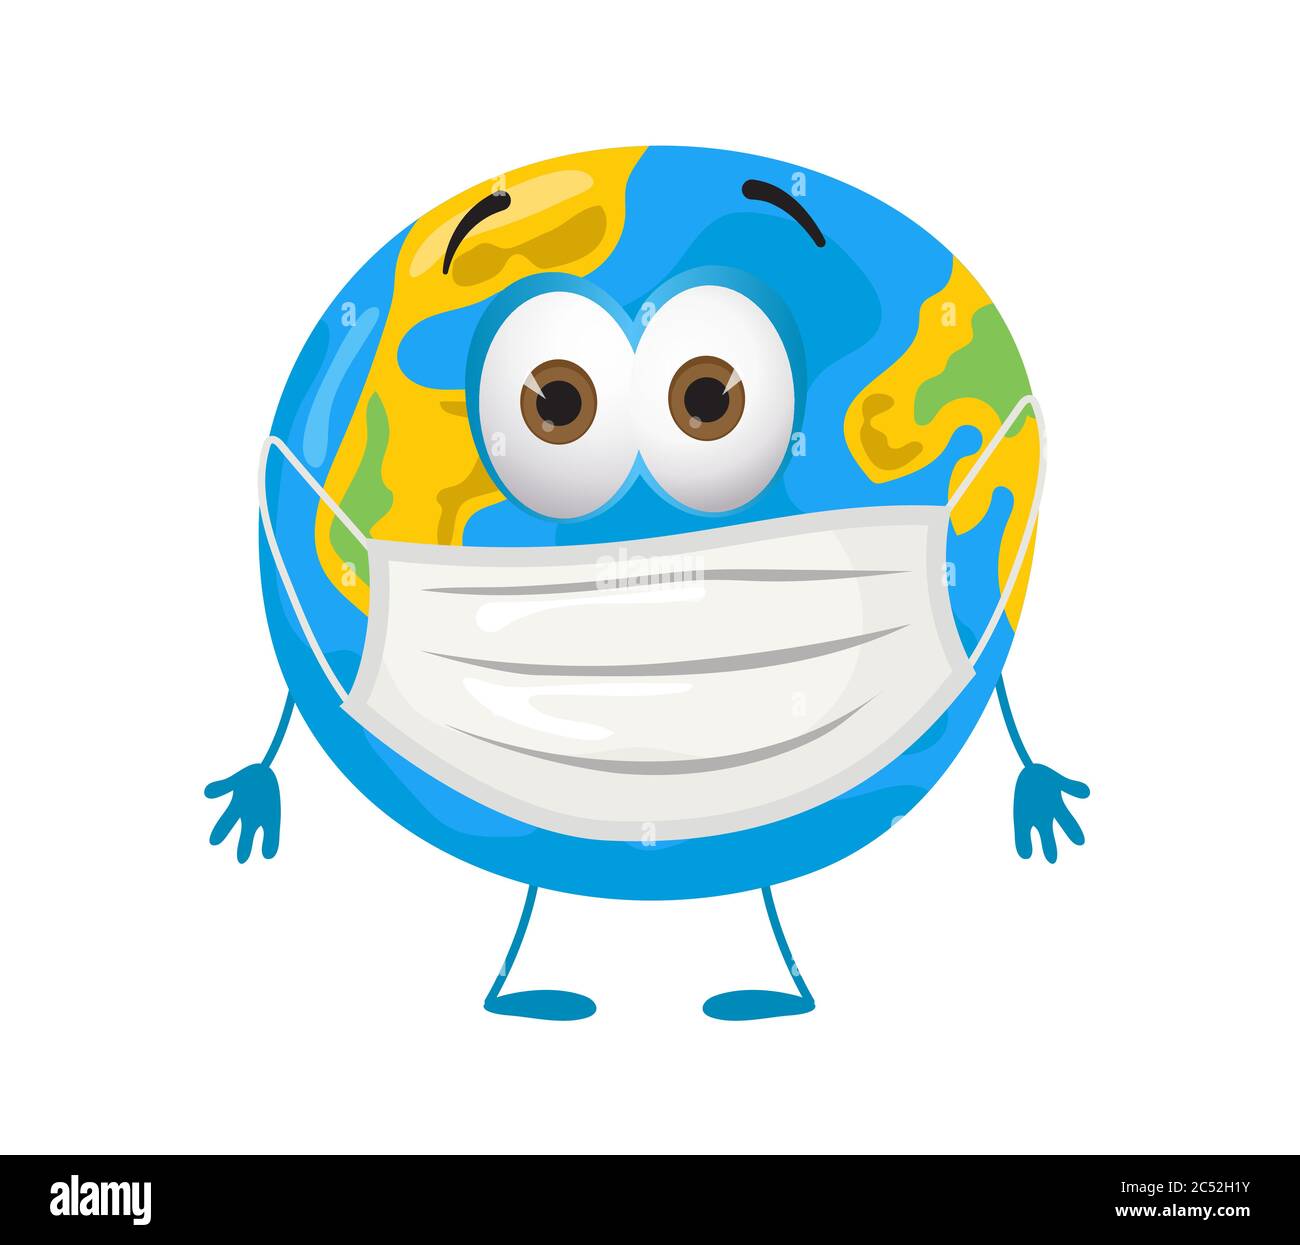 Angst Erde Planet mit Maske wegen Coronavirus Pandemie, moderne flache Vektor-Illustration Stock Vektor